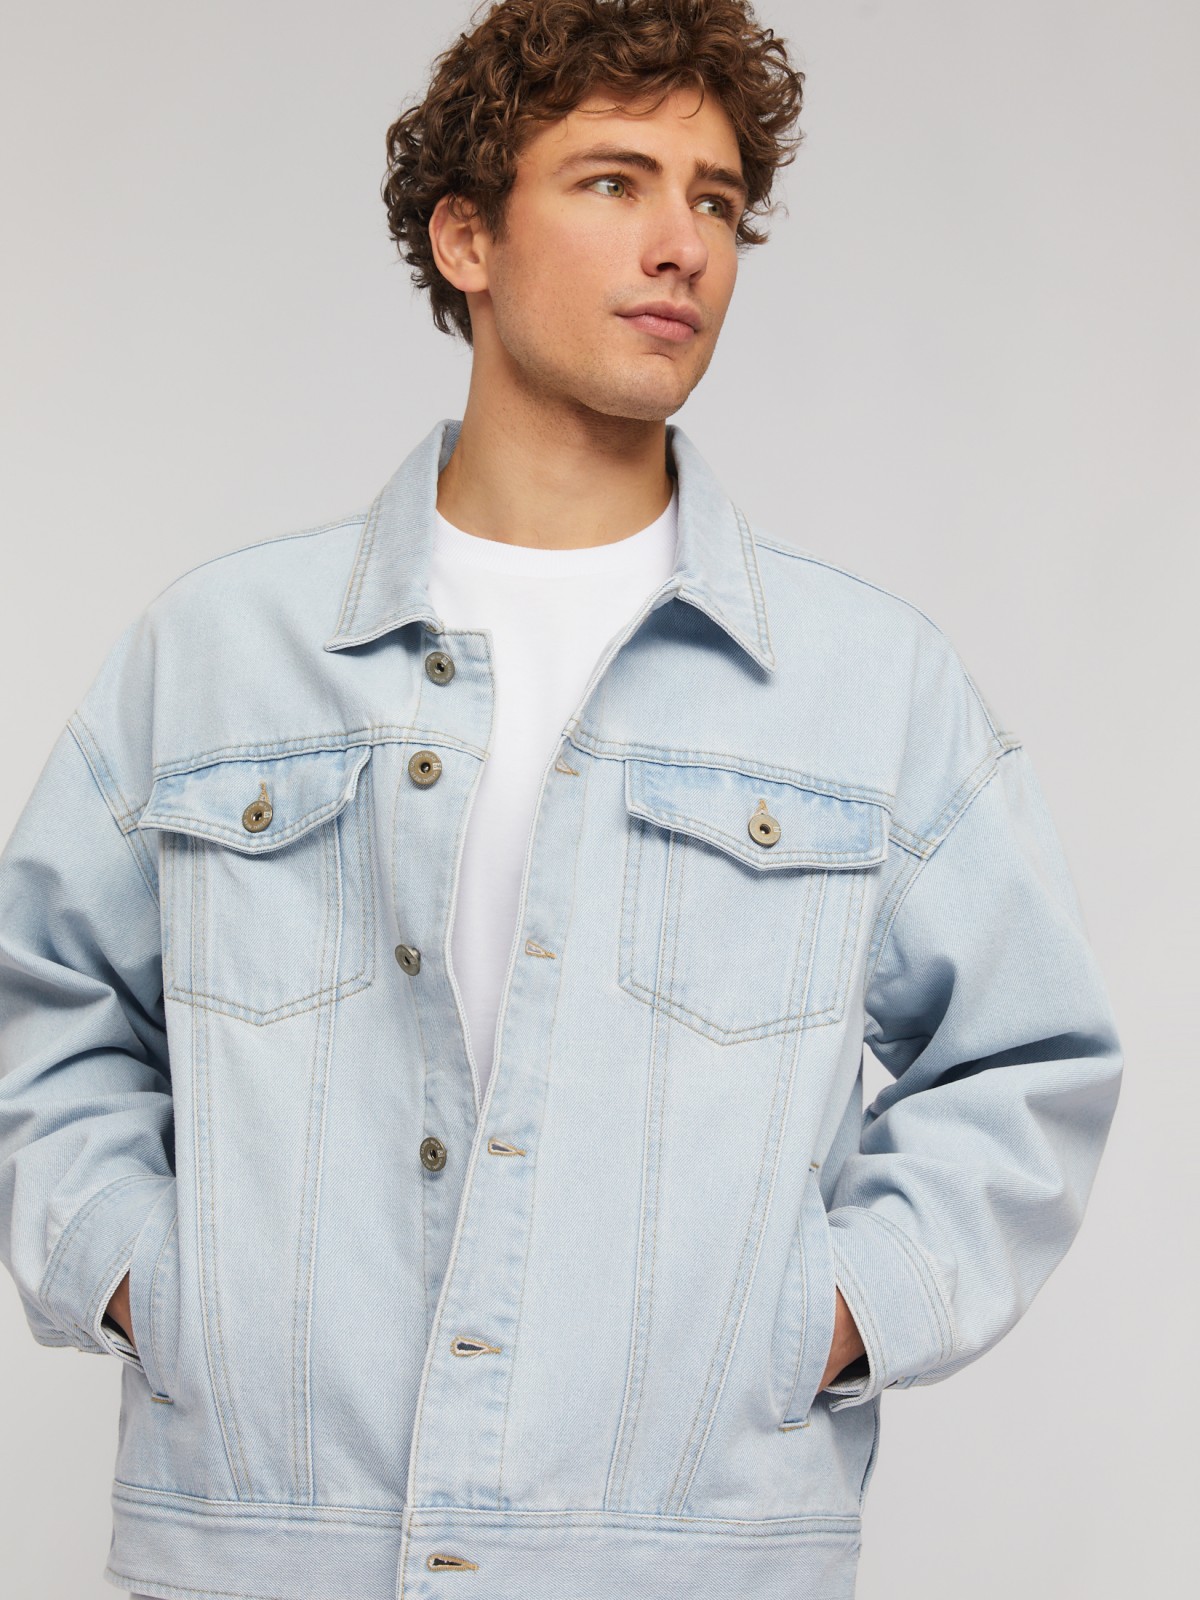 Джинсовая куртка-рубашка свободного фасона zolla 214225D1S031, цвет голубой, размер L - фото 3